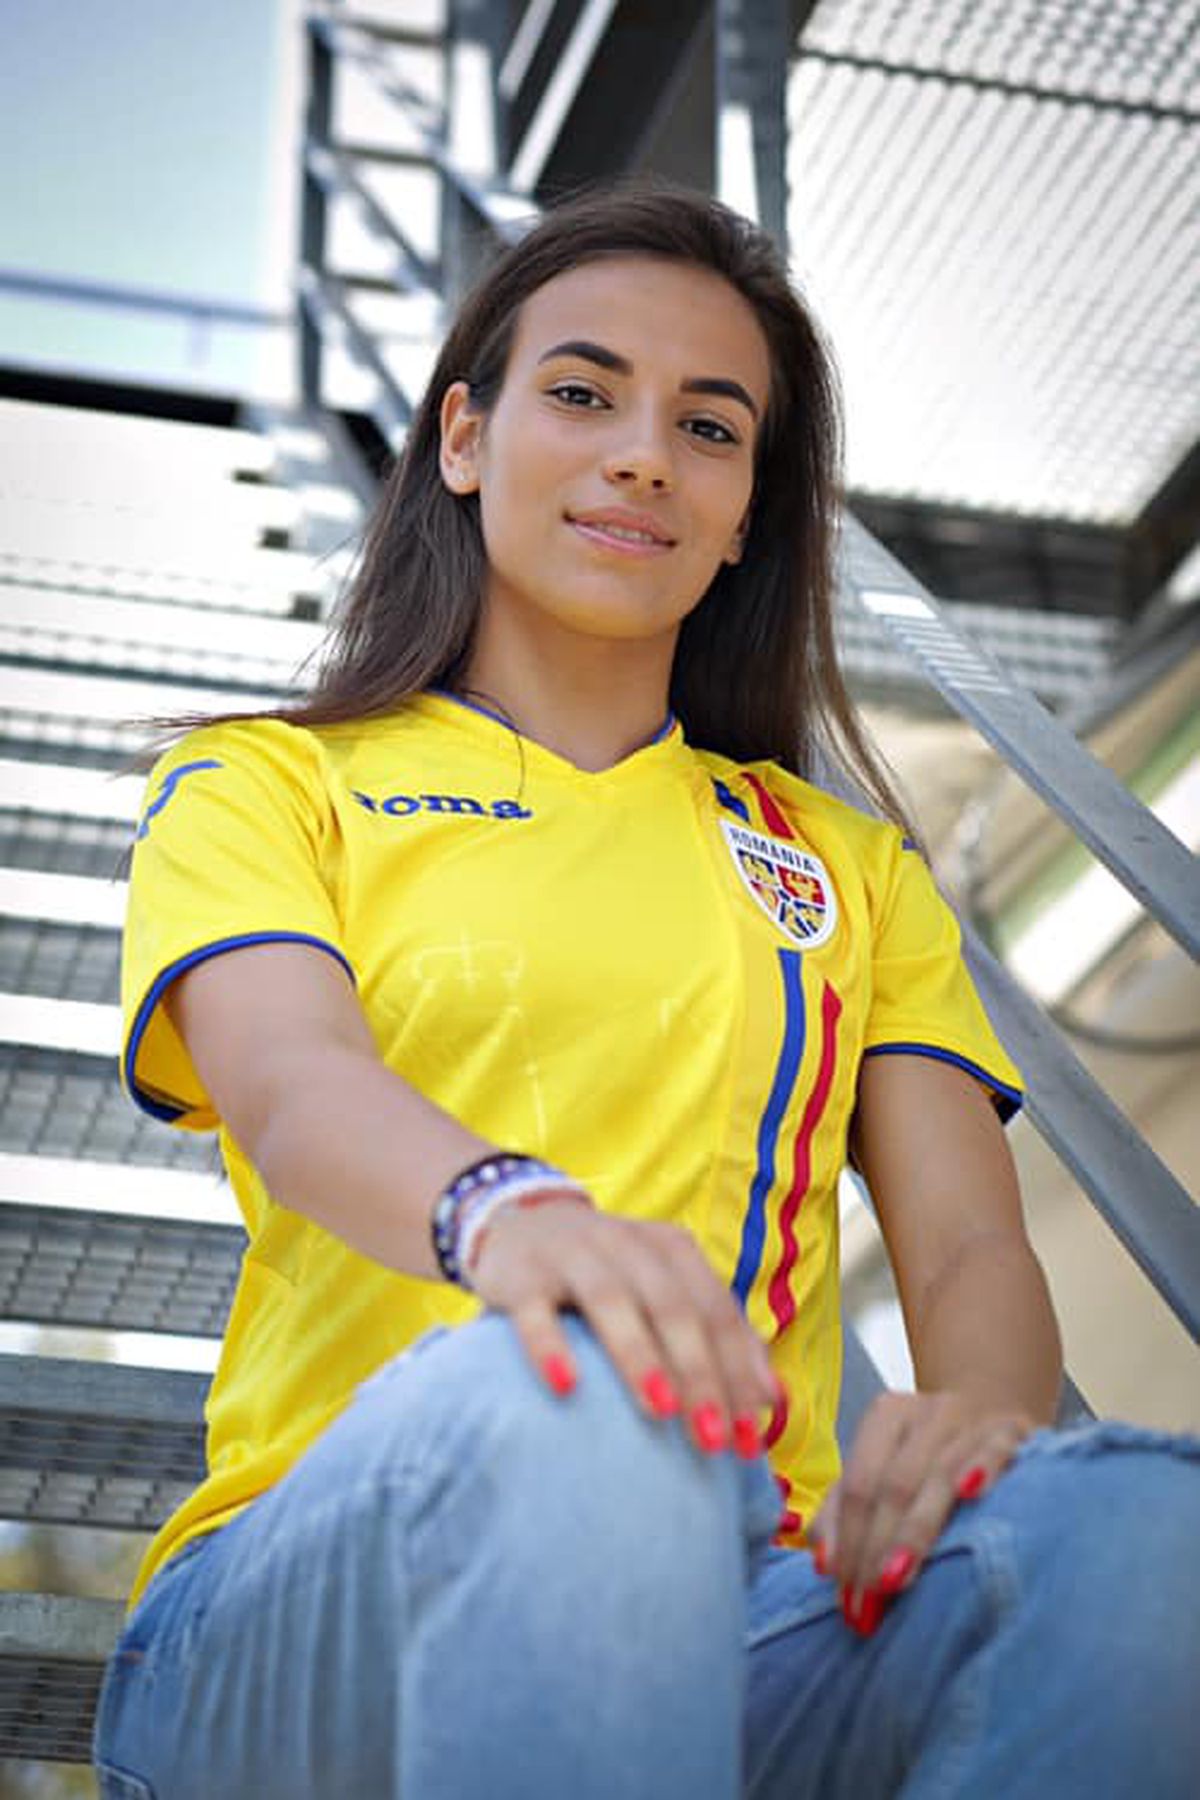 Să o cunoaștem pe Teodora Meluță, cea mai bună jucătoare de fotbal din România! Și-a spus povestea „La feminin”: „Vreau să mă mărit și să mai joc fotbal după ce aș avea primul copil”